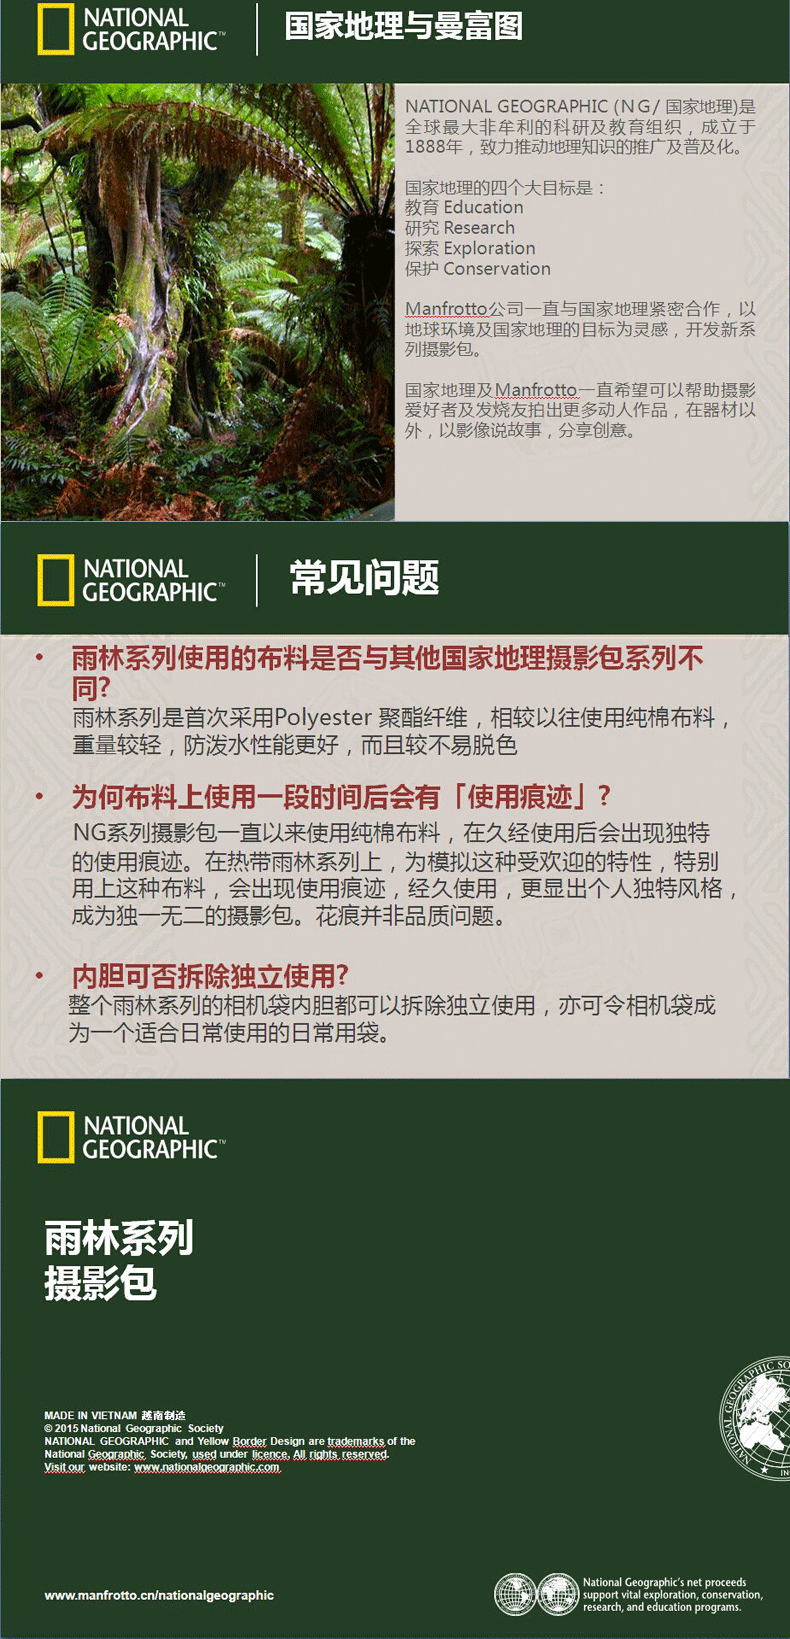 国家地理(National Geographic) NG RF 4474 雨林系列小型腰包